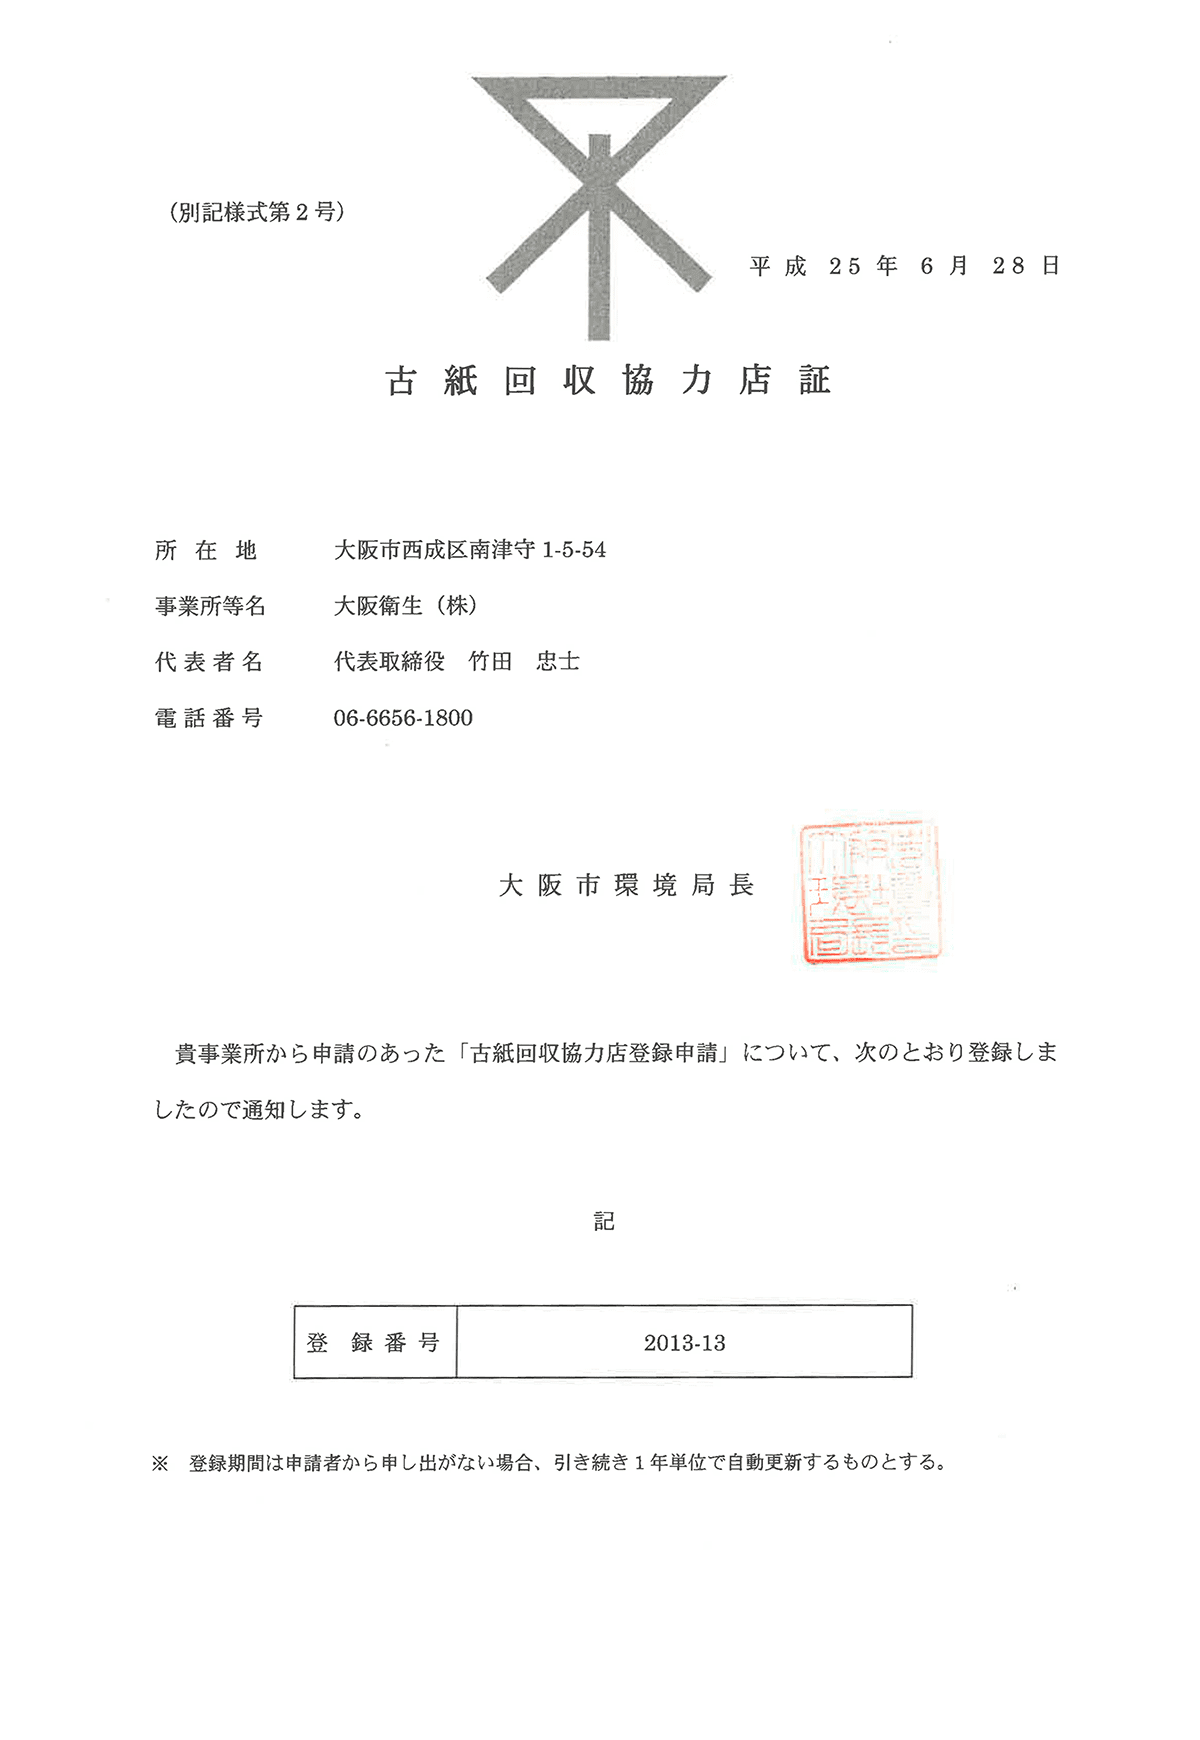 大阪市古紙回収協力店登録証（2013-13）